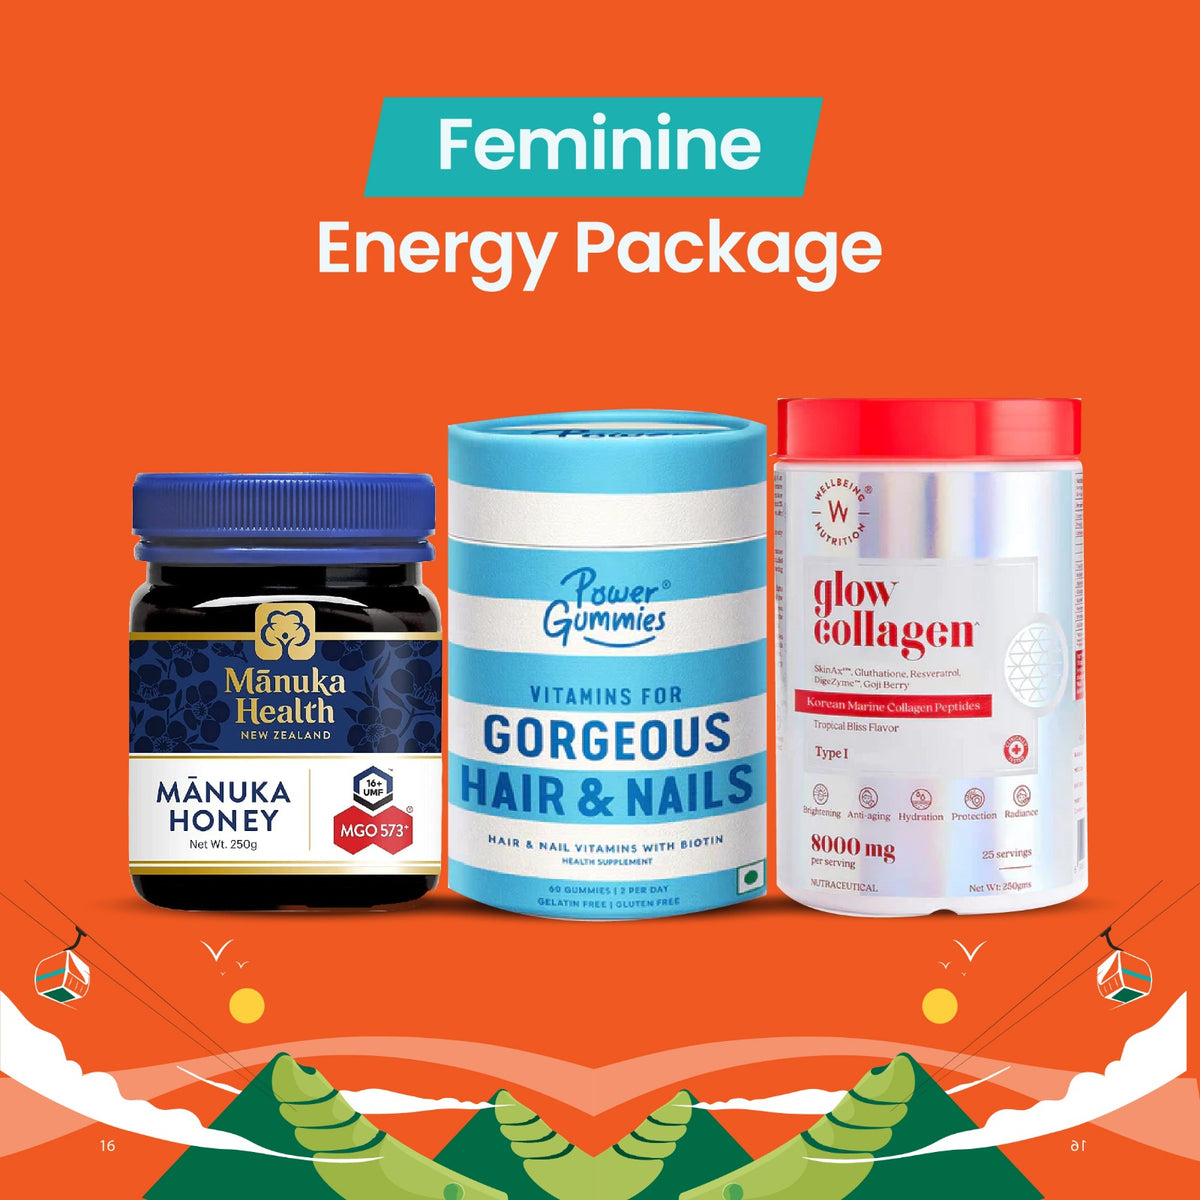 Feminine Energy Package